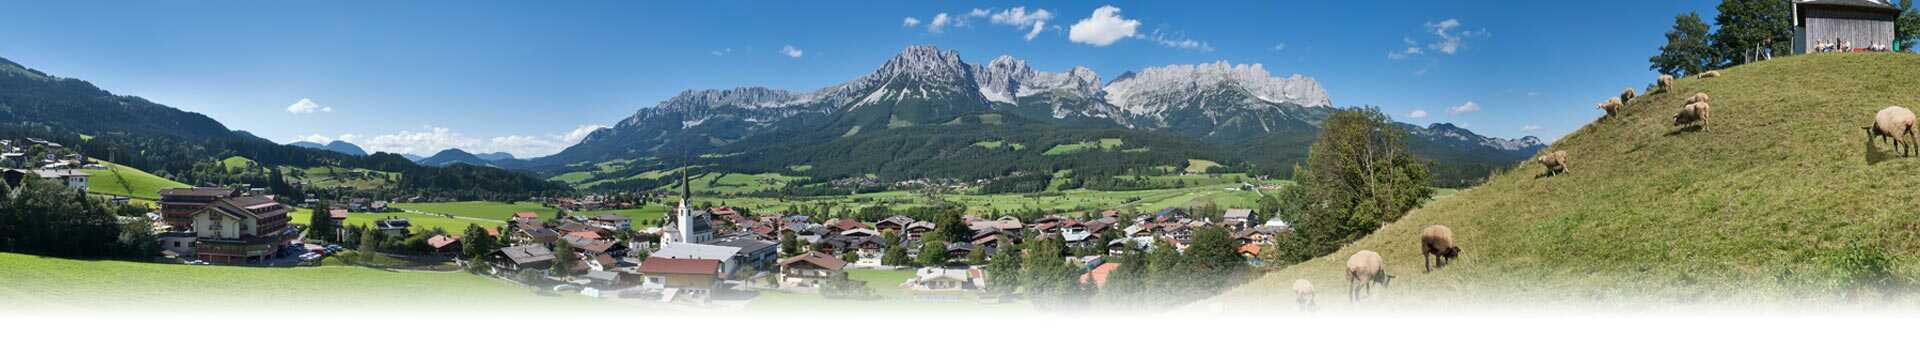 Tyrol